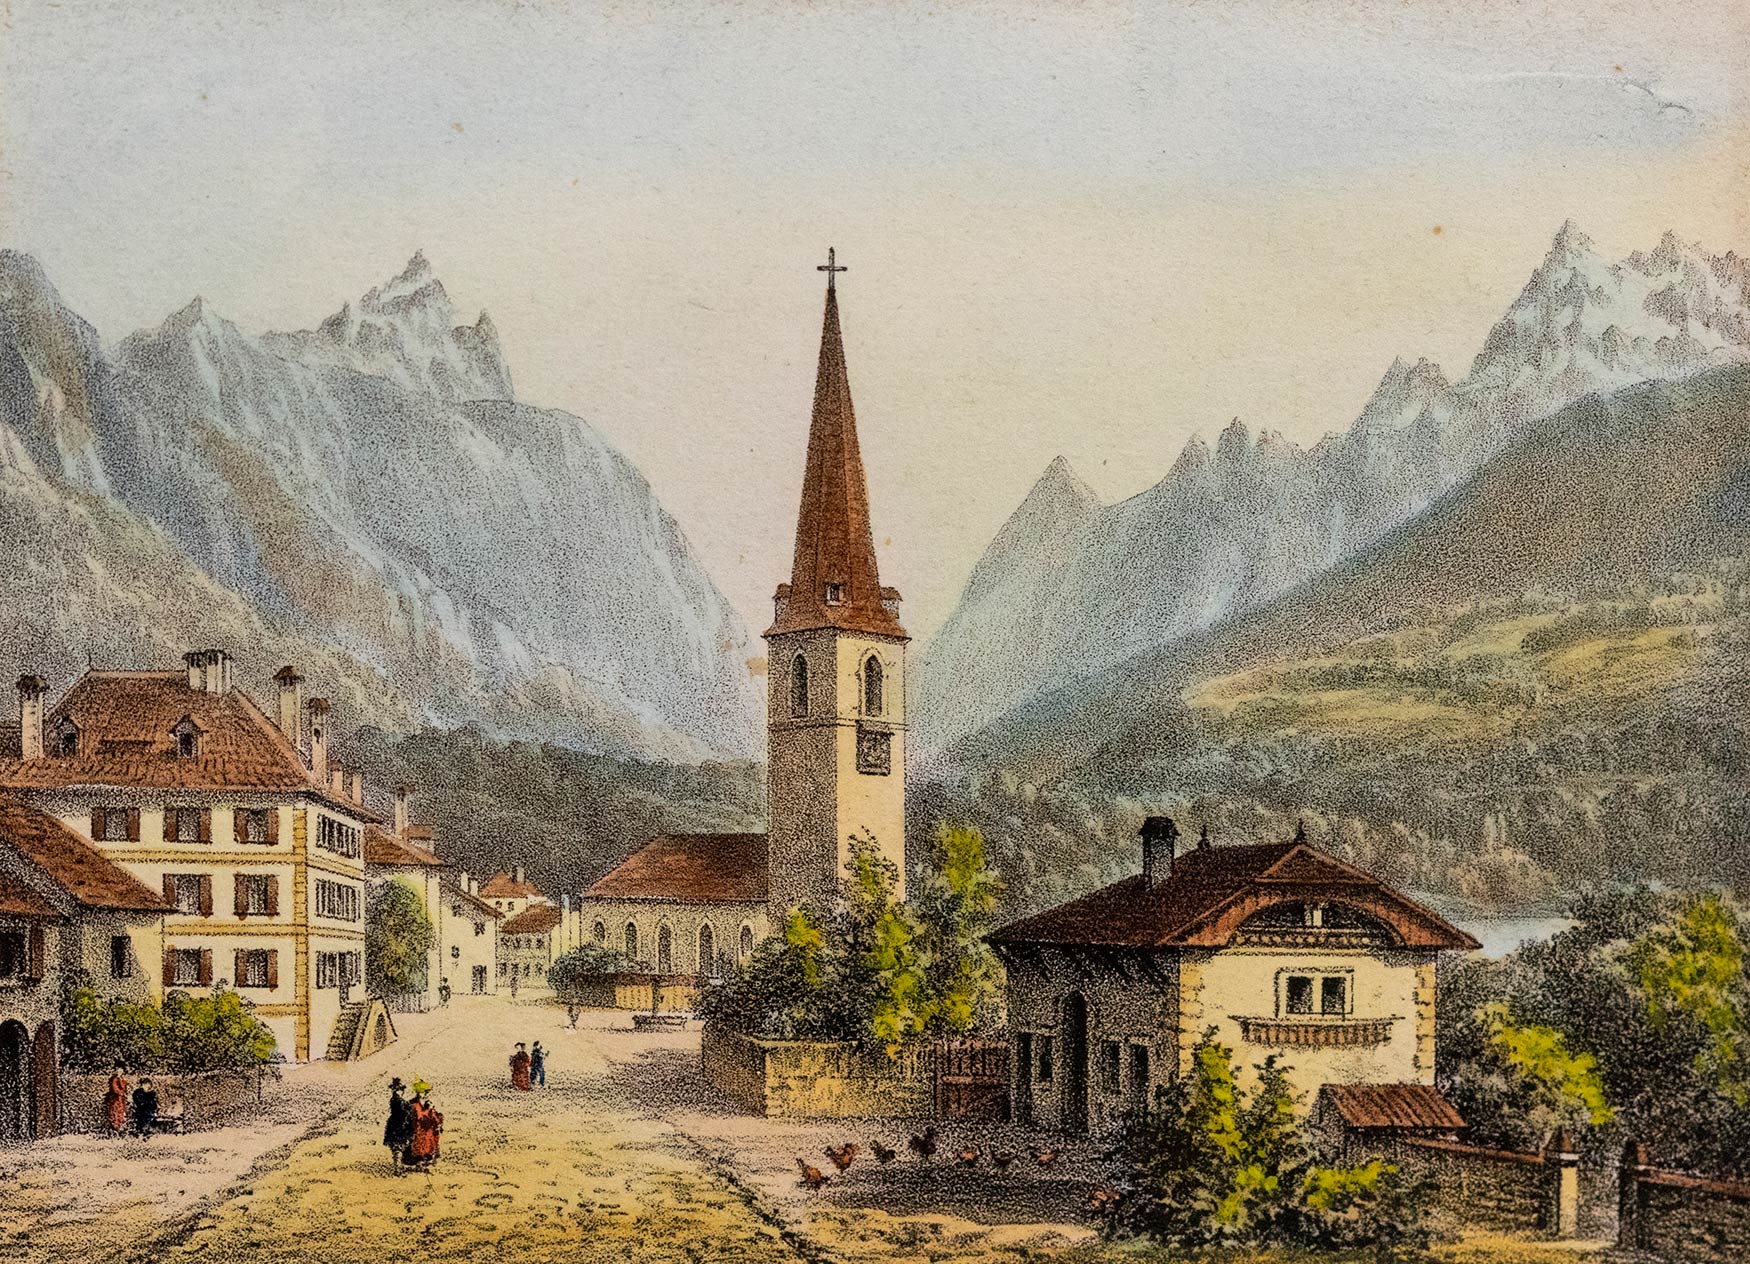 Entrée du village de Bex par Jacques-Émile Lafon (1817-1886). Dimensions de l'iconographie, 8,4 x 11,1cm. Dimensions totales, 22,2 x 24,9cm